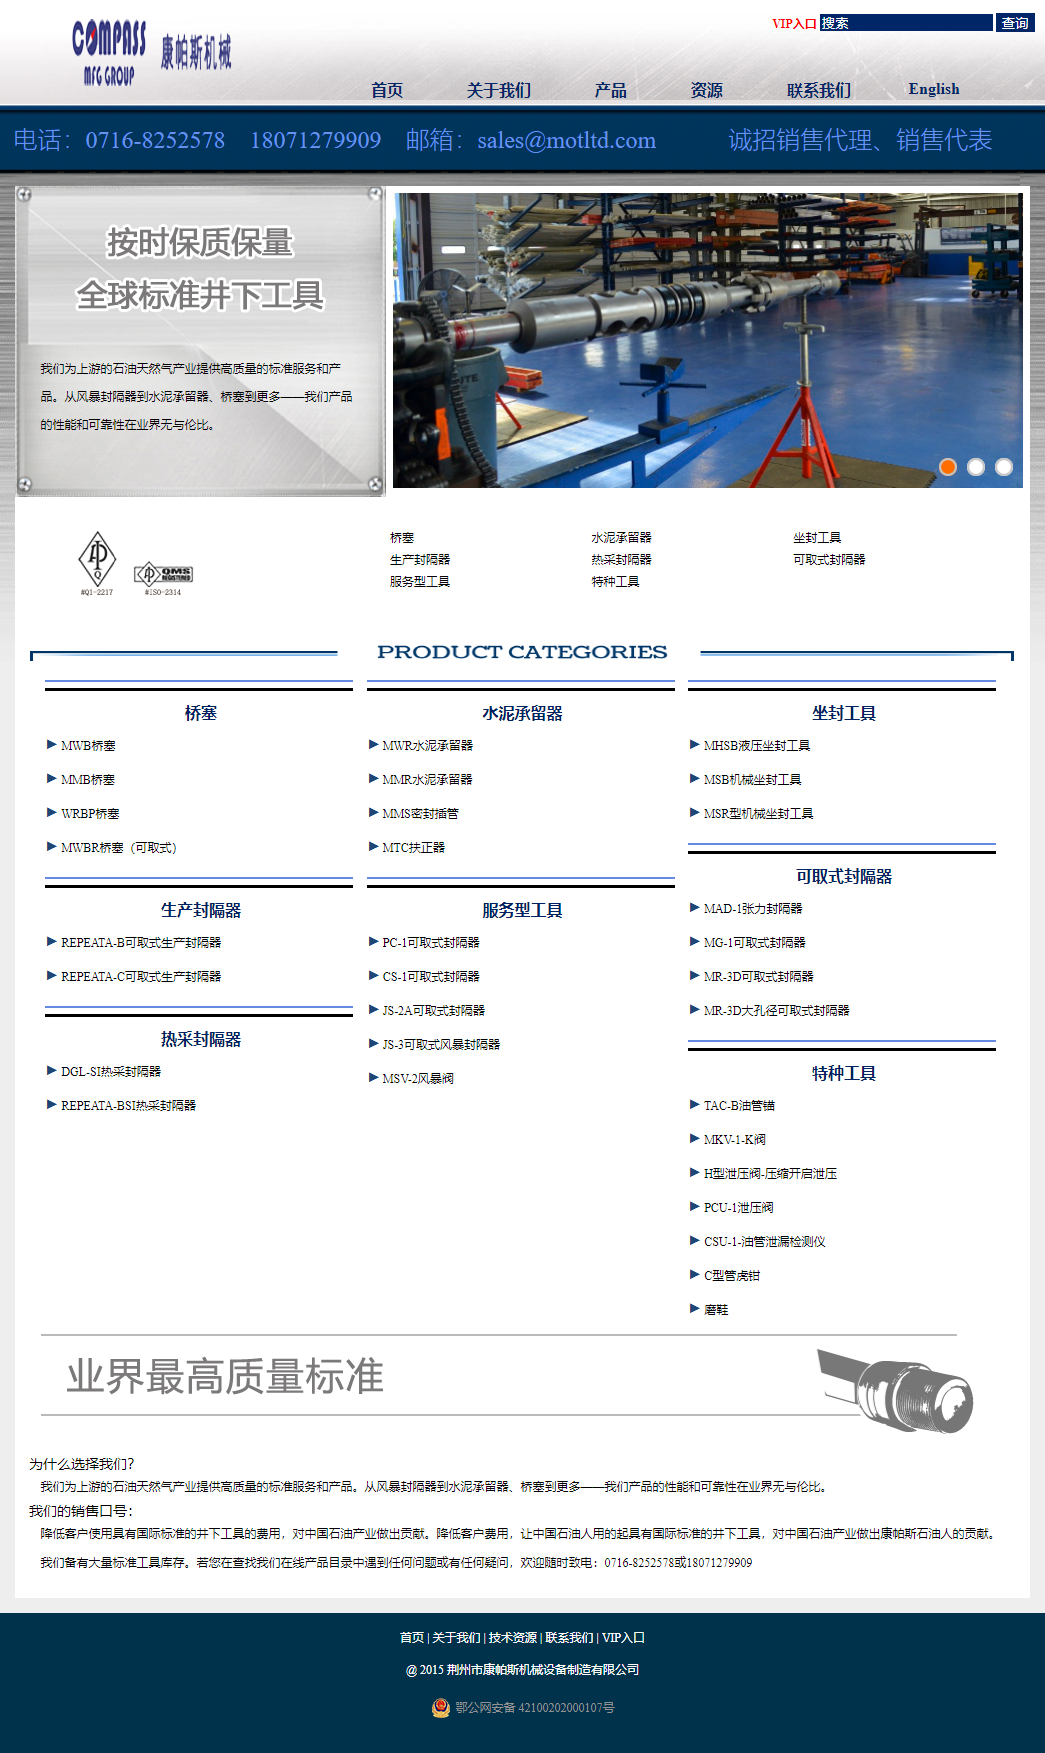 荆州麦普石油机械有限公司网站案例